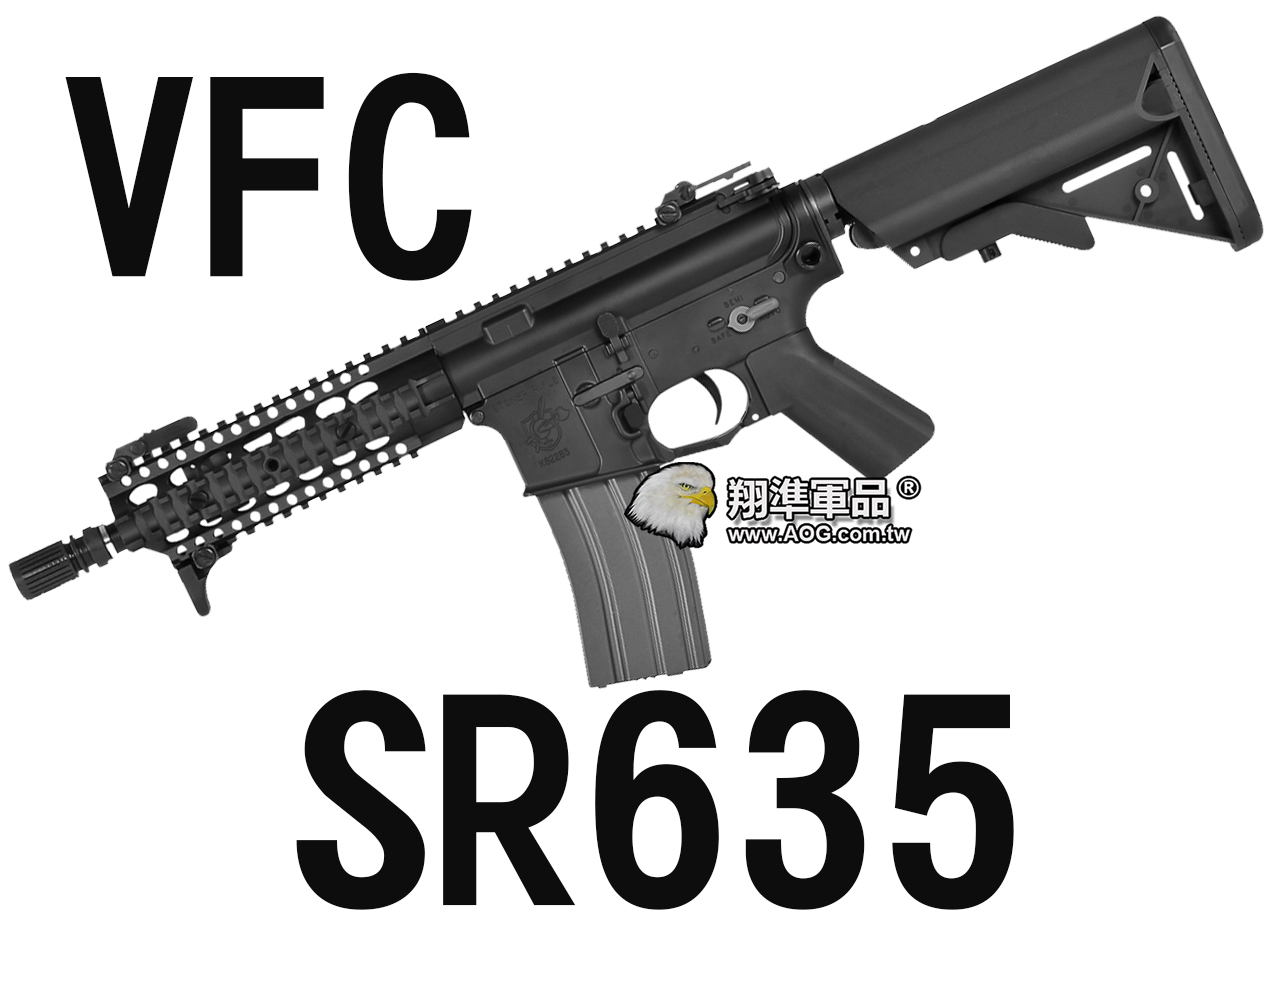 【翔準軍品AOG】【VFC】SR635 海豹托 魚骨版 電動槍 長槍 衝鋒槍 黑色  VF1-LSR635-BK81